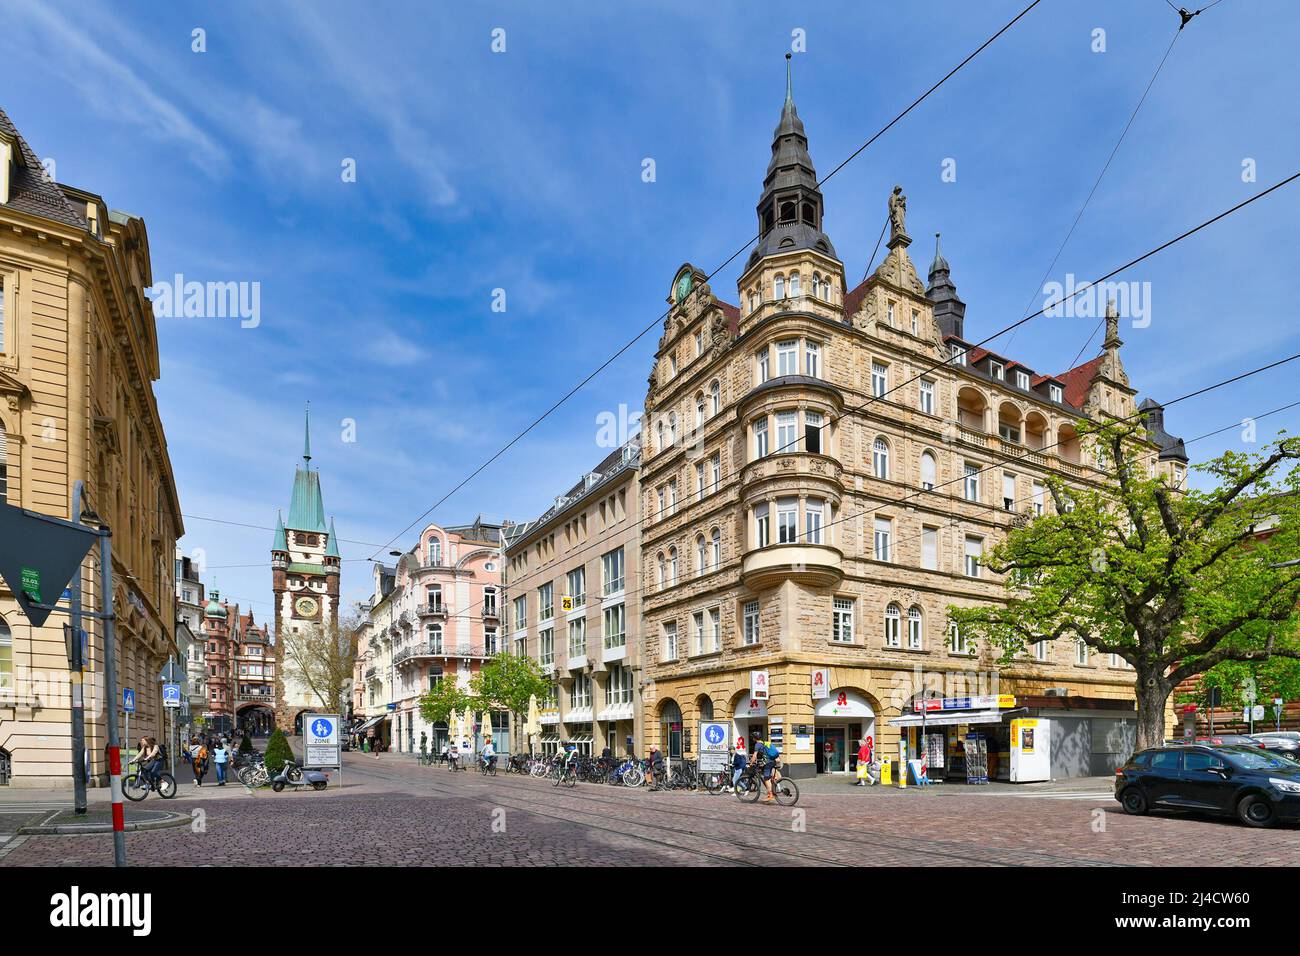 Freiburg, Deutschland - April 2022: Historisches Gebäude namens 'Opelhaus' aus dem Jahr 1905 mit niederländischen Giebeln und Türmen. Am Holzmarkt gelegen Stockfoto